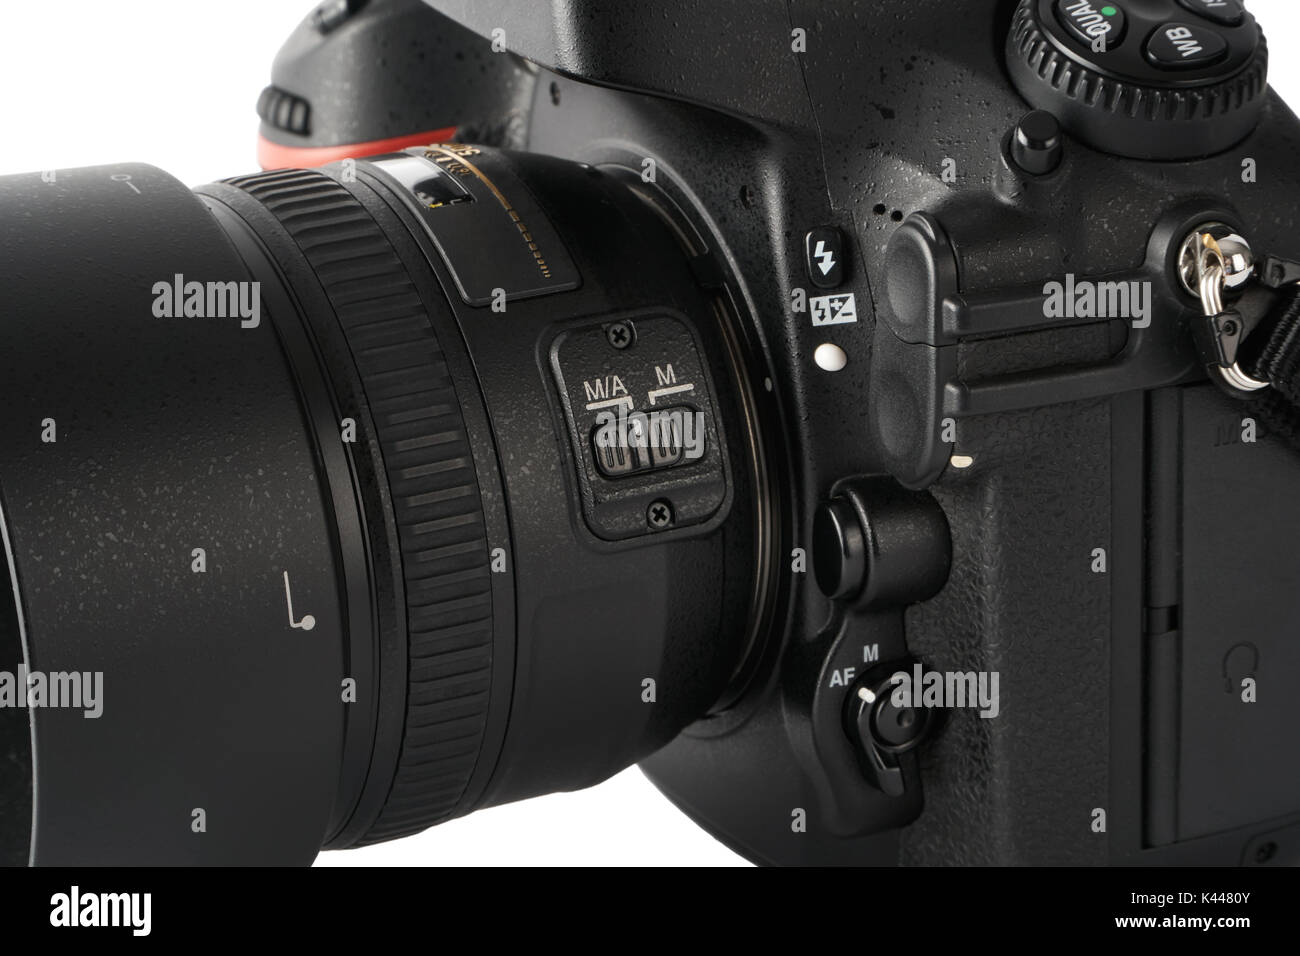 Nahaufnahme des Autofokus und manueller Fokus Schalter auf eine DSLR-Kamera  mit Objektiv Stockfotografie - Alamy